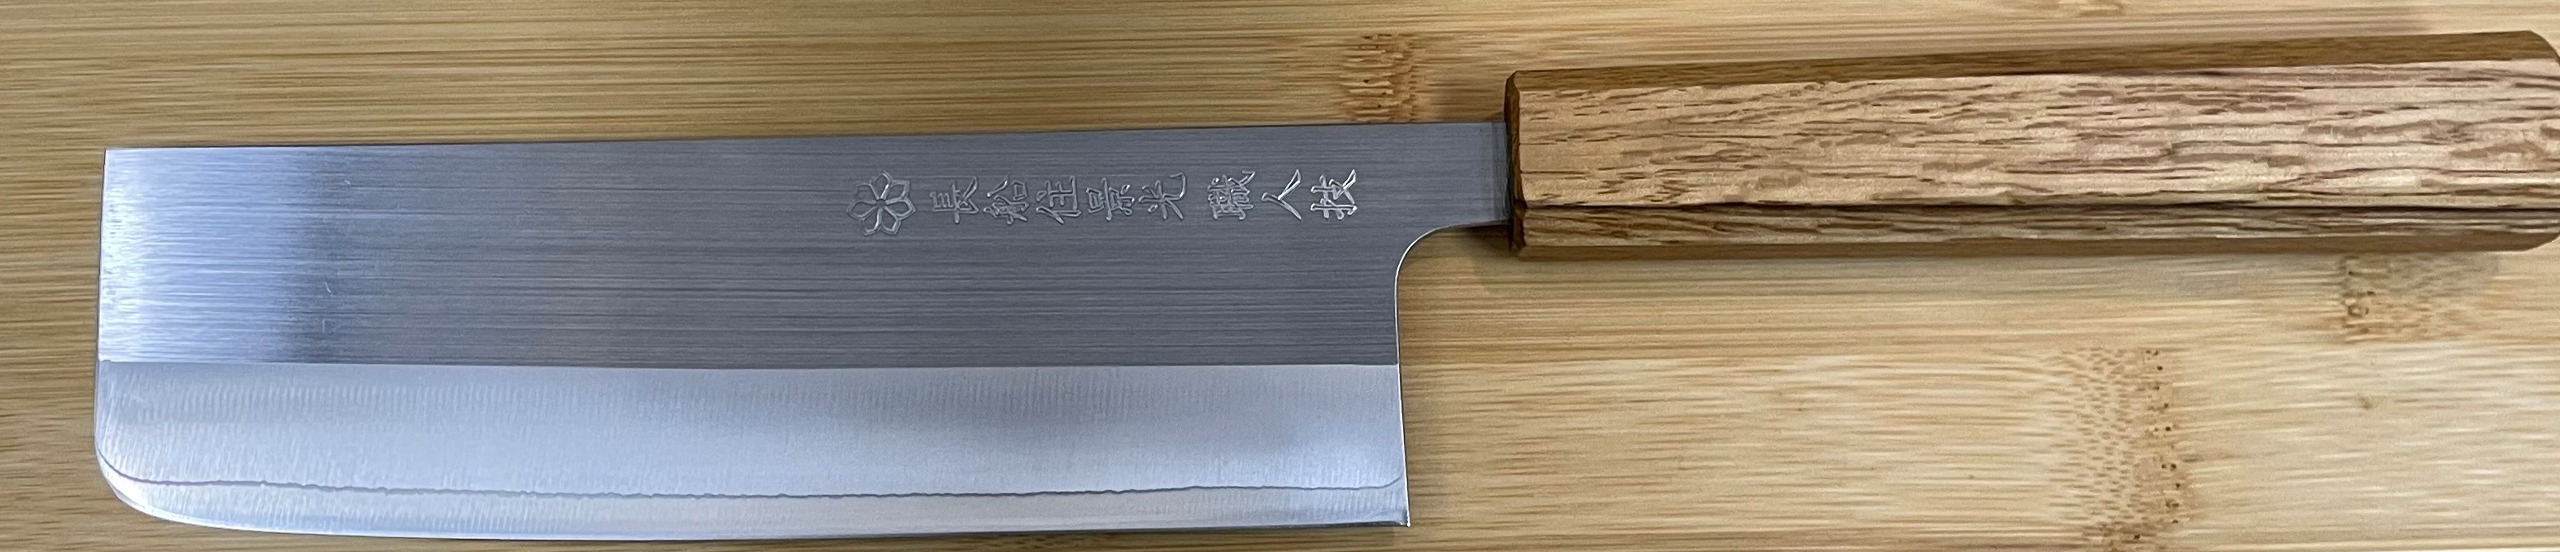 couteau japonais nakiri paris